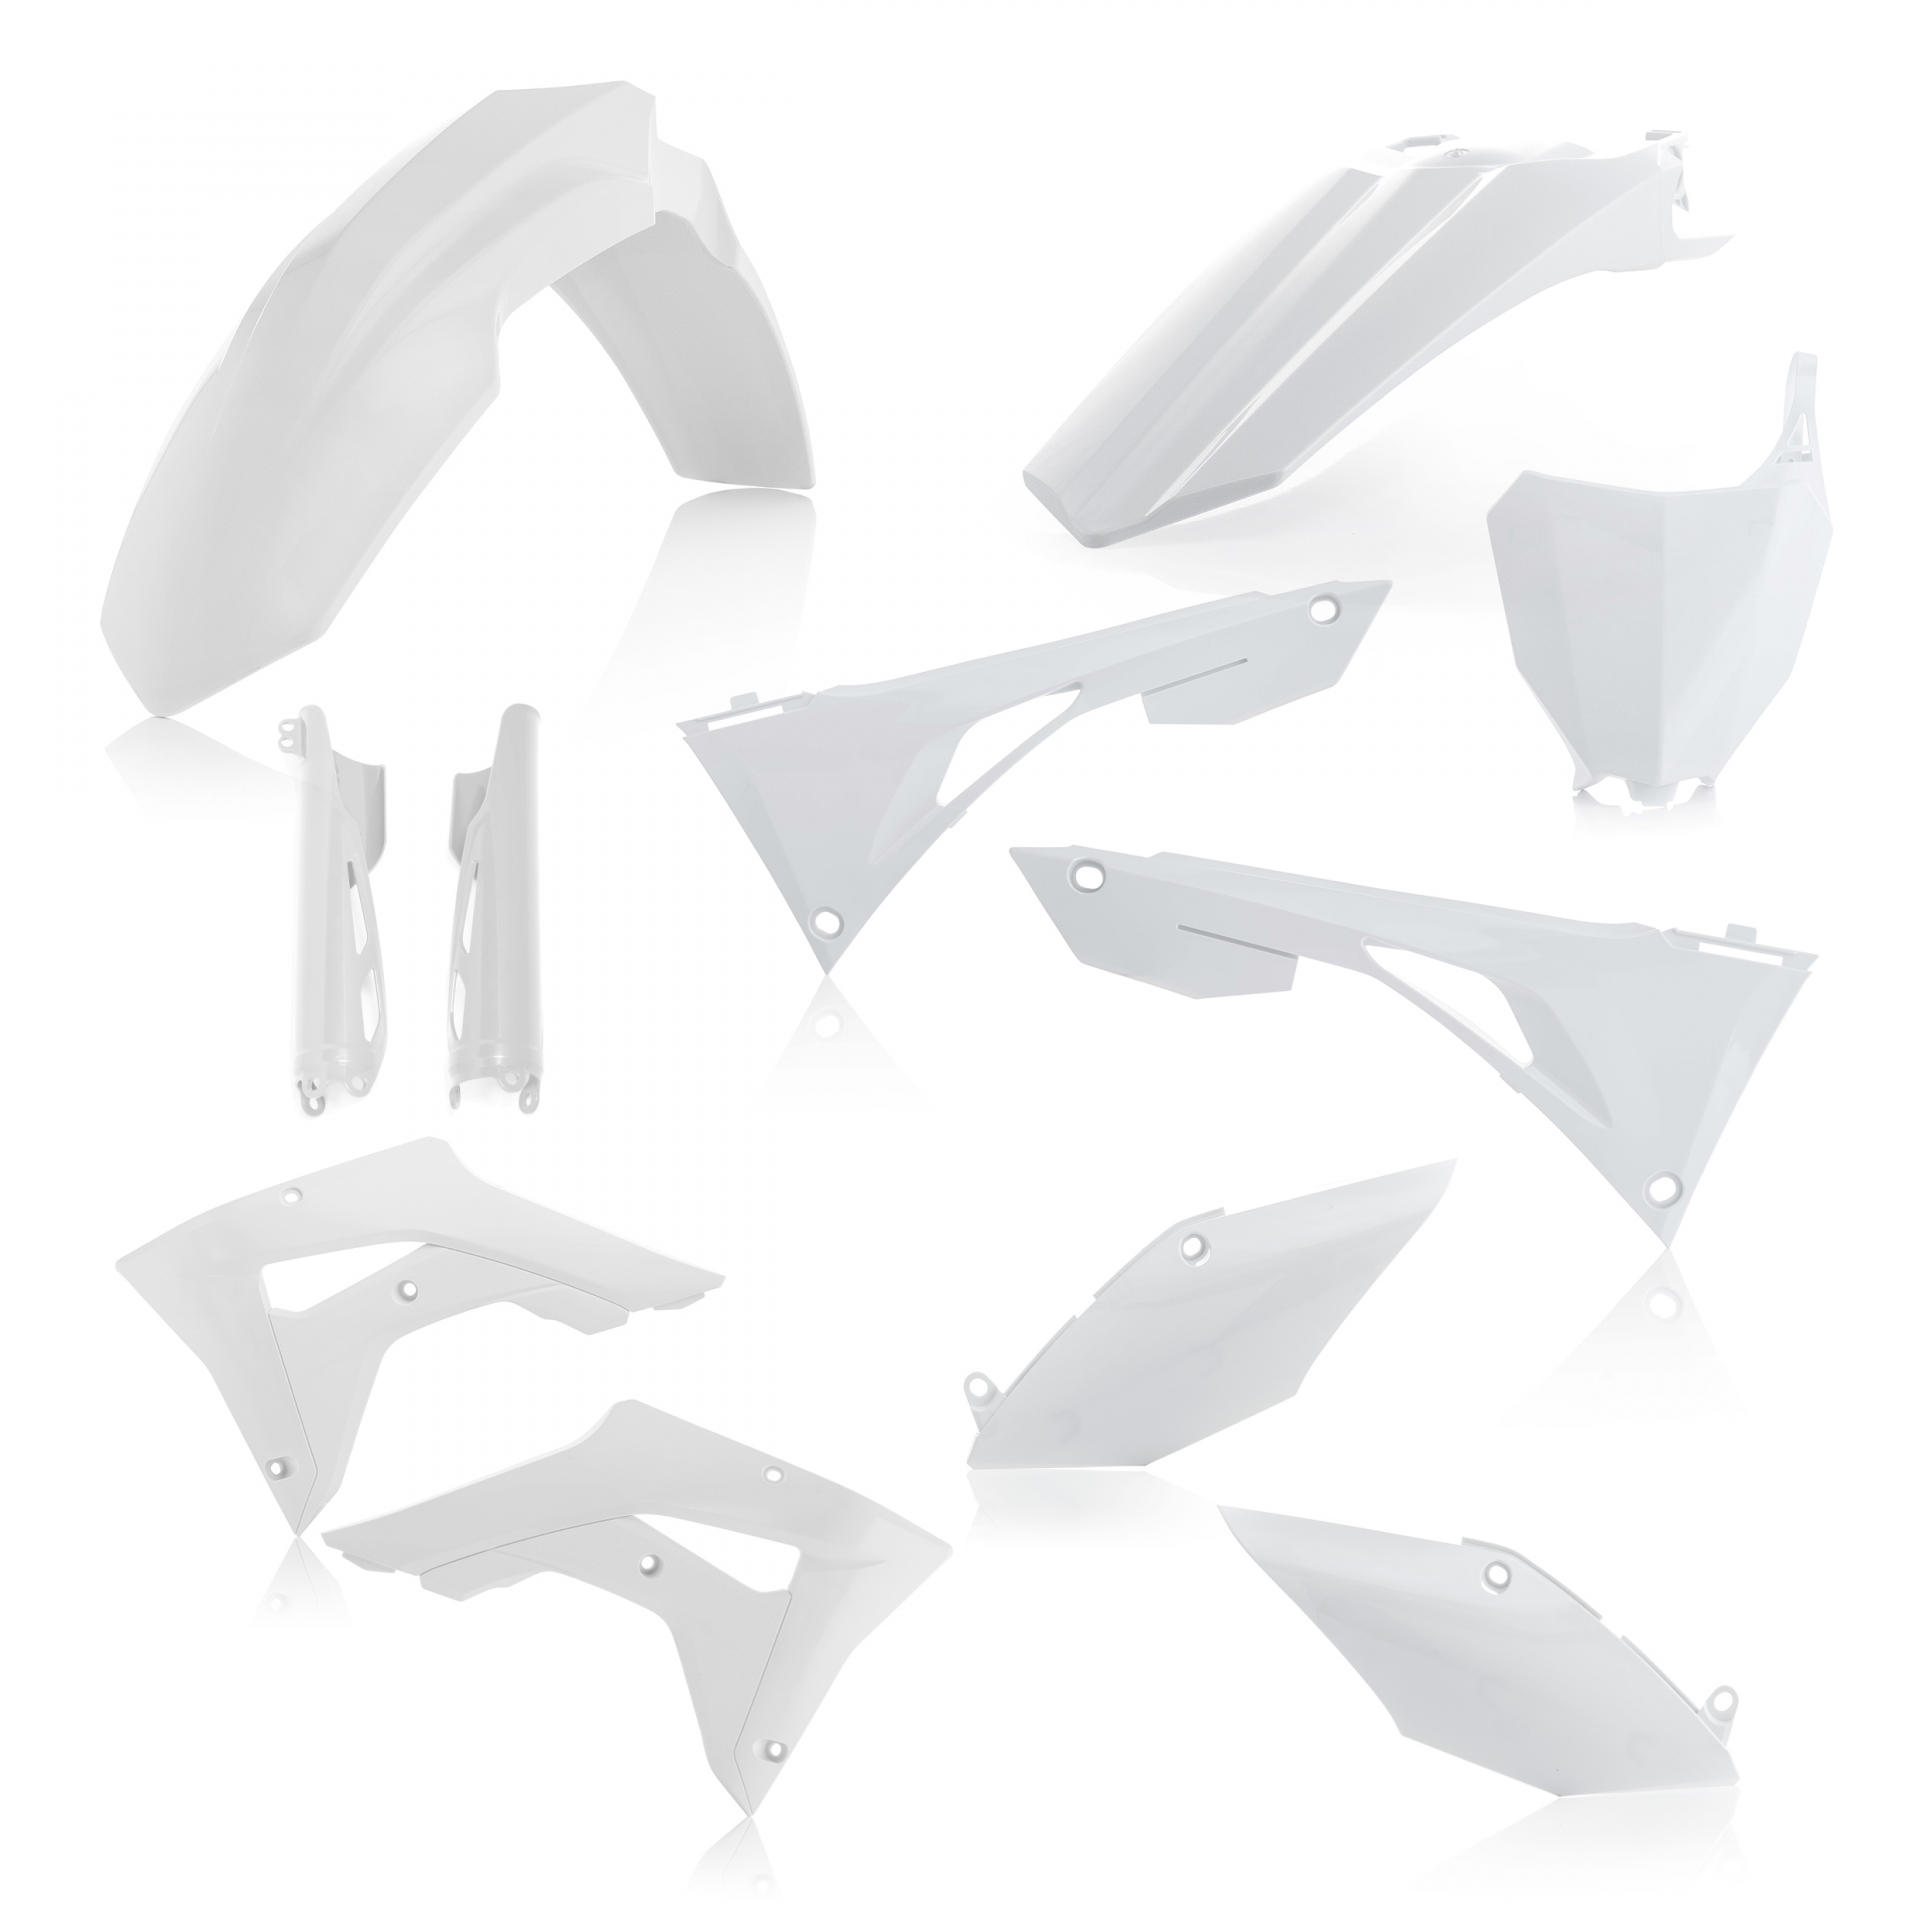 Plastikteile für deine Honda CRF / CR 250/450 in weiß bestehend aus Kotflügel vorn Kotflügel hinten Kühlerspoiler Seitenteile Gabelschützer Startnummerntafel